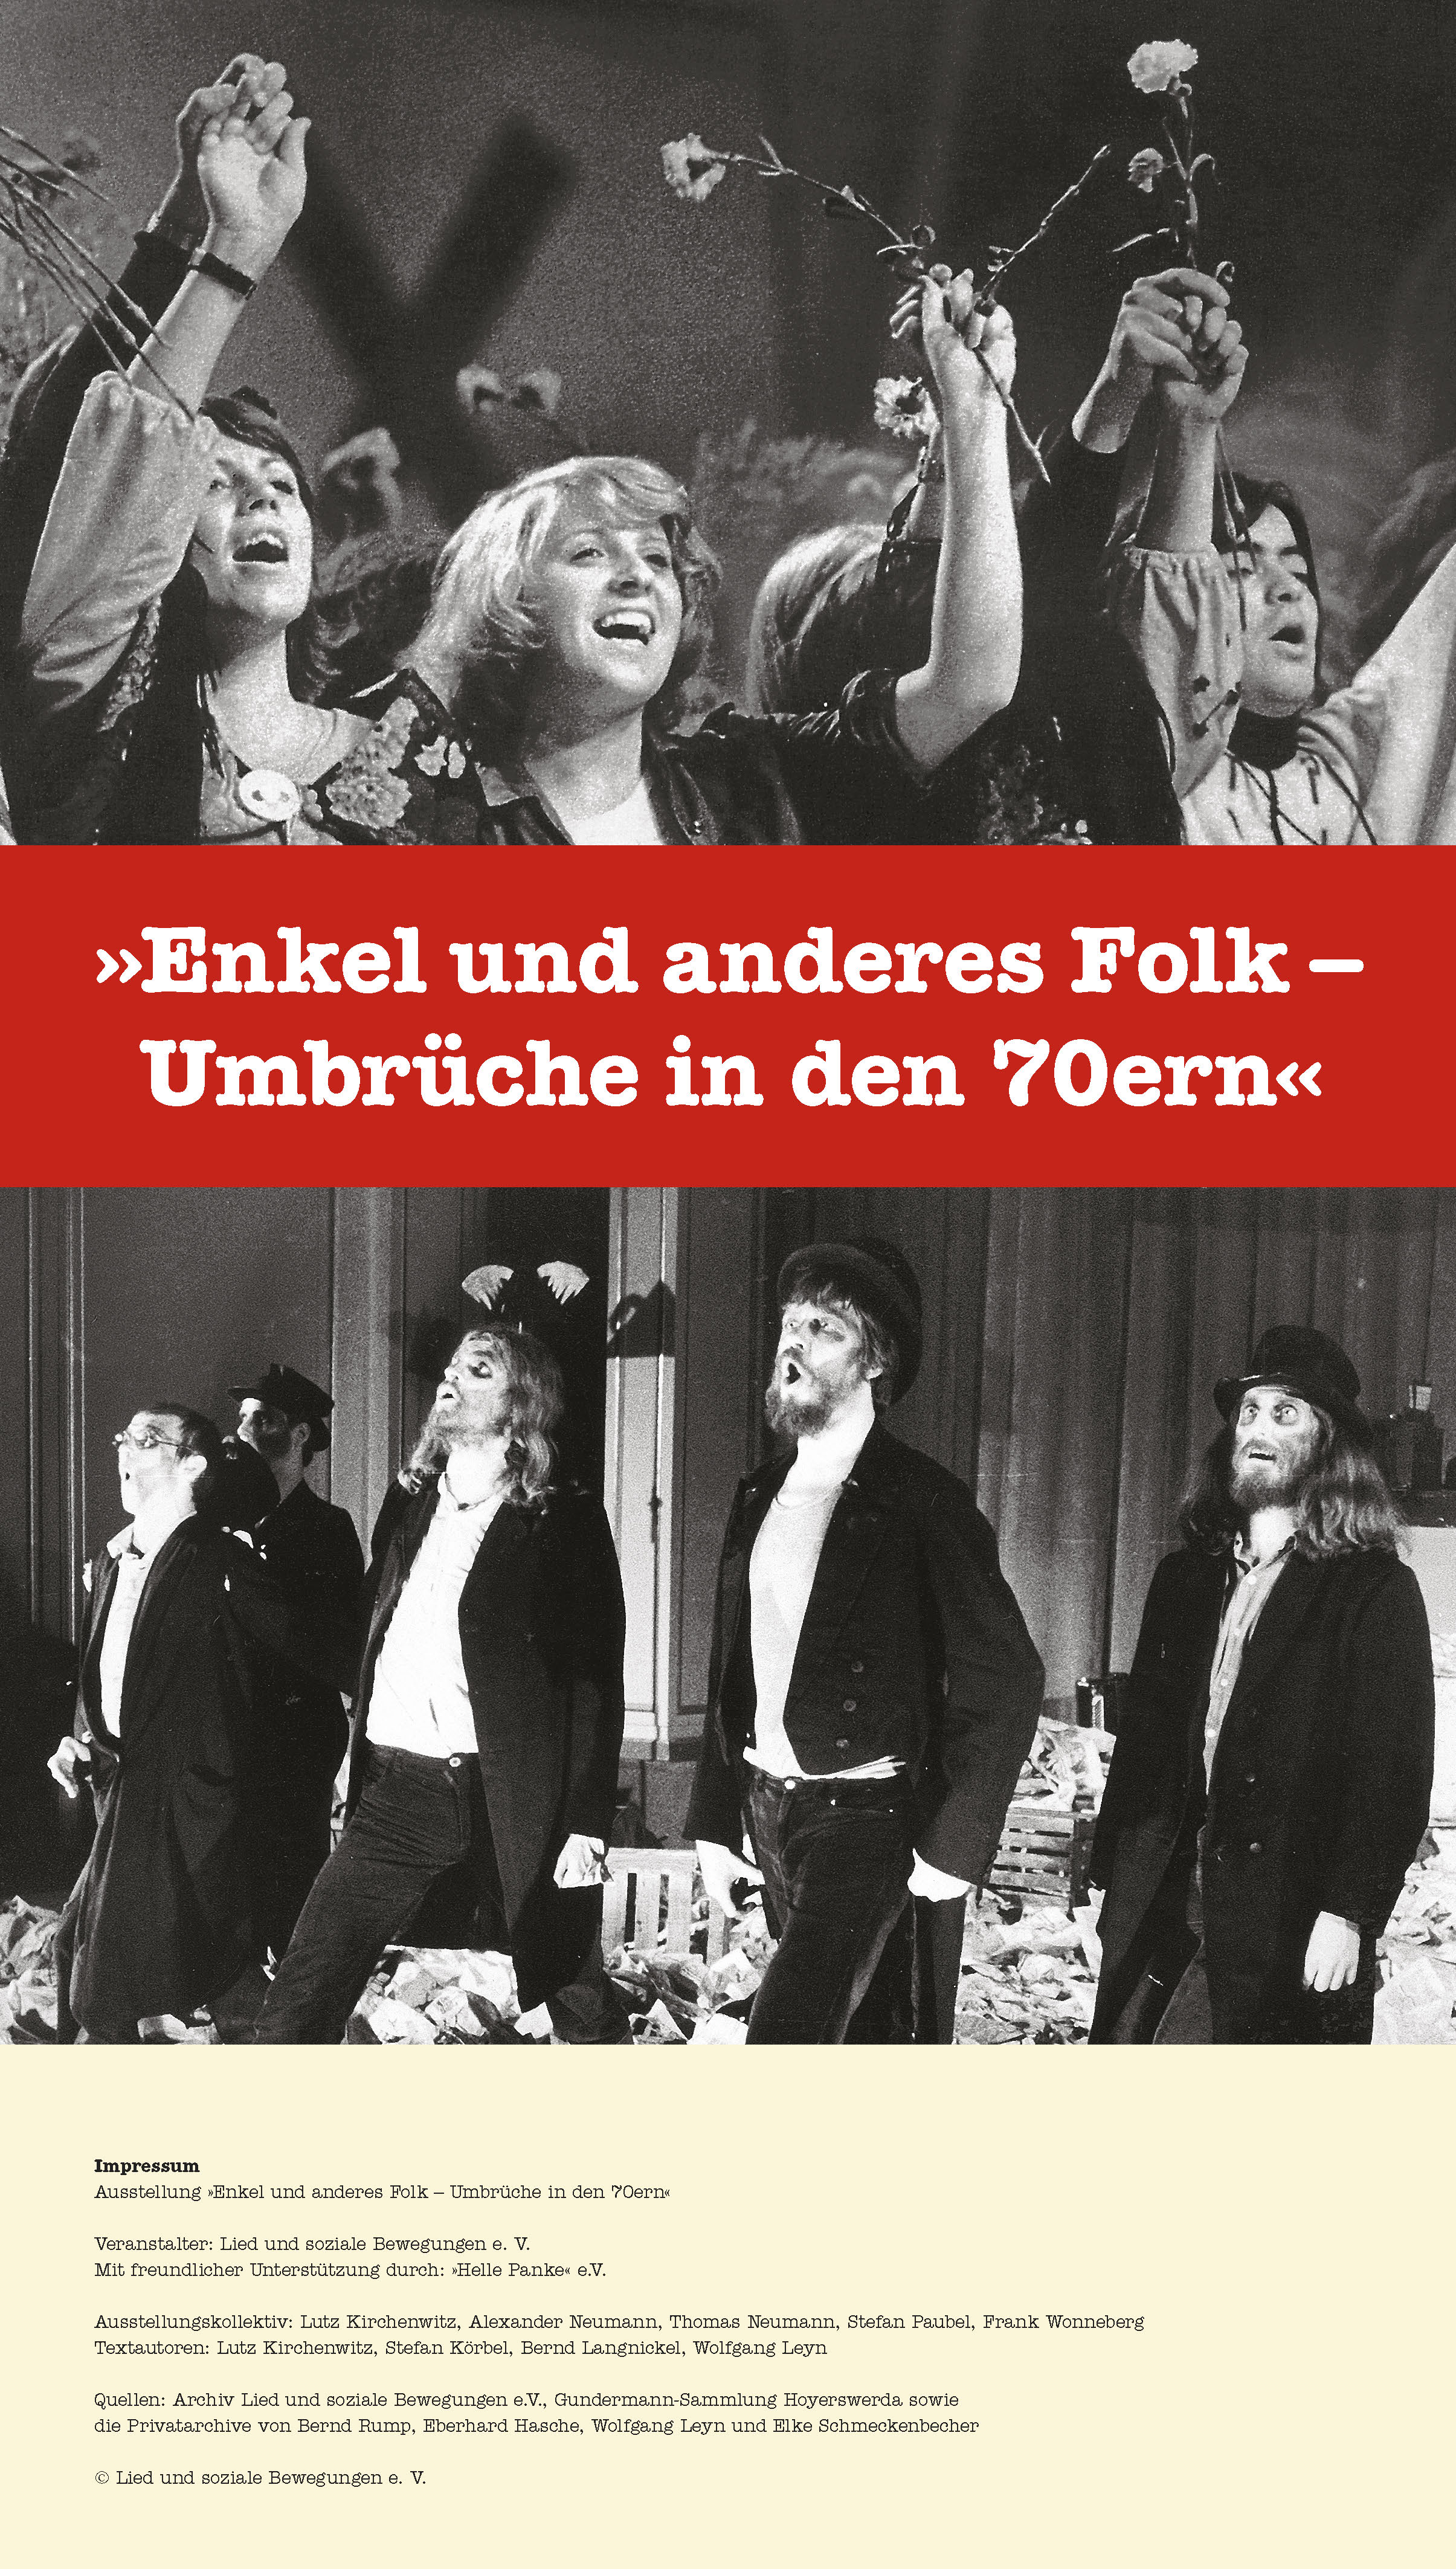 Poster for the exhibition Enkel und anderes Folk - Umbrüche in den 70ern